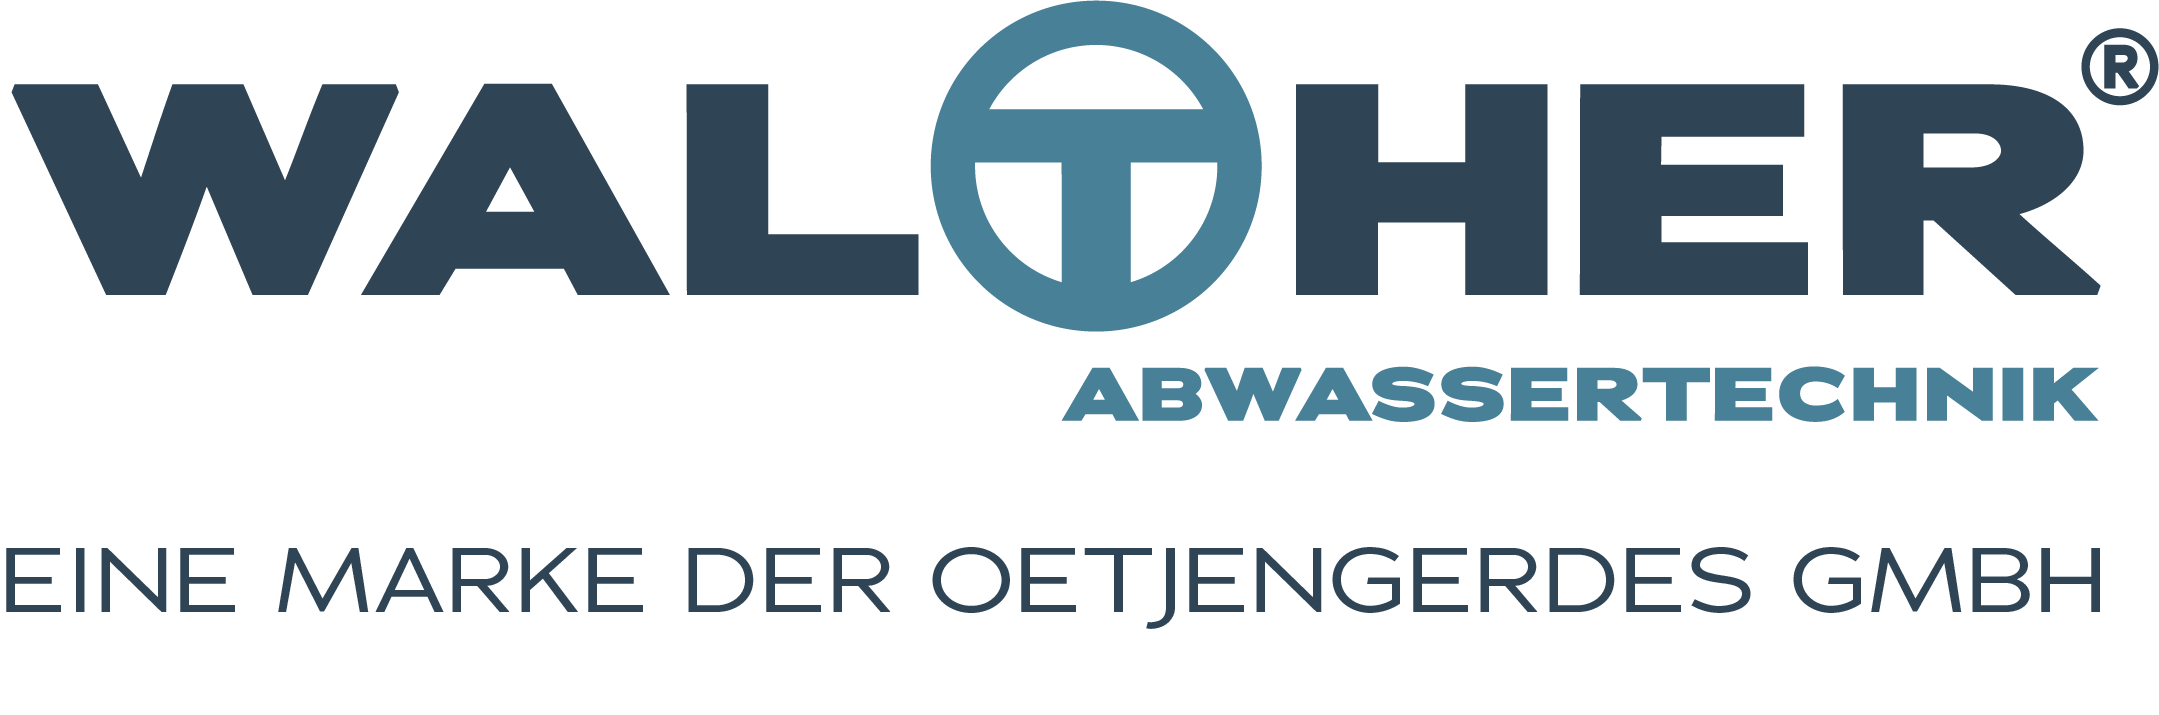 LOGO_Walther_Abwassertechnik -R-Eine Marke... SGrau